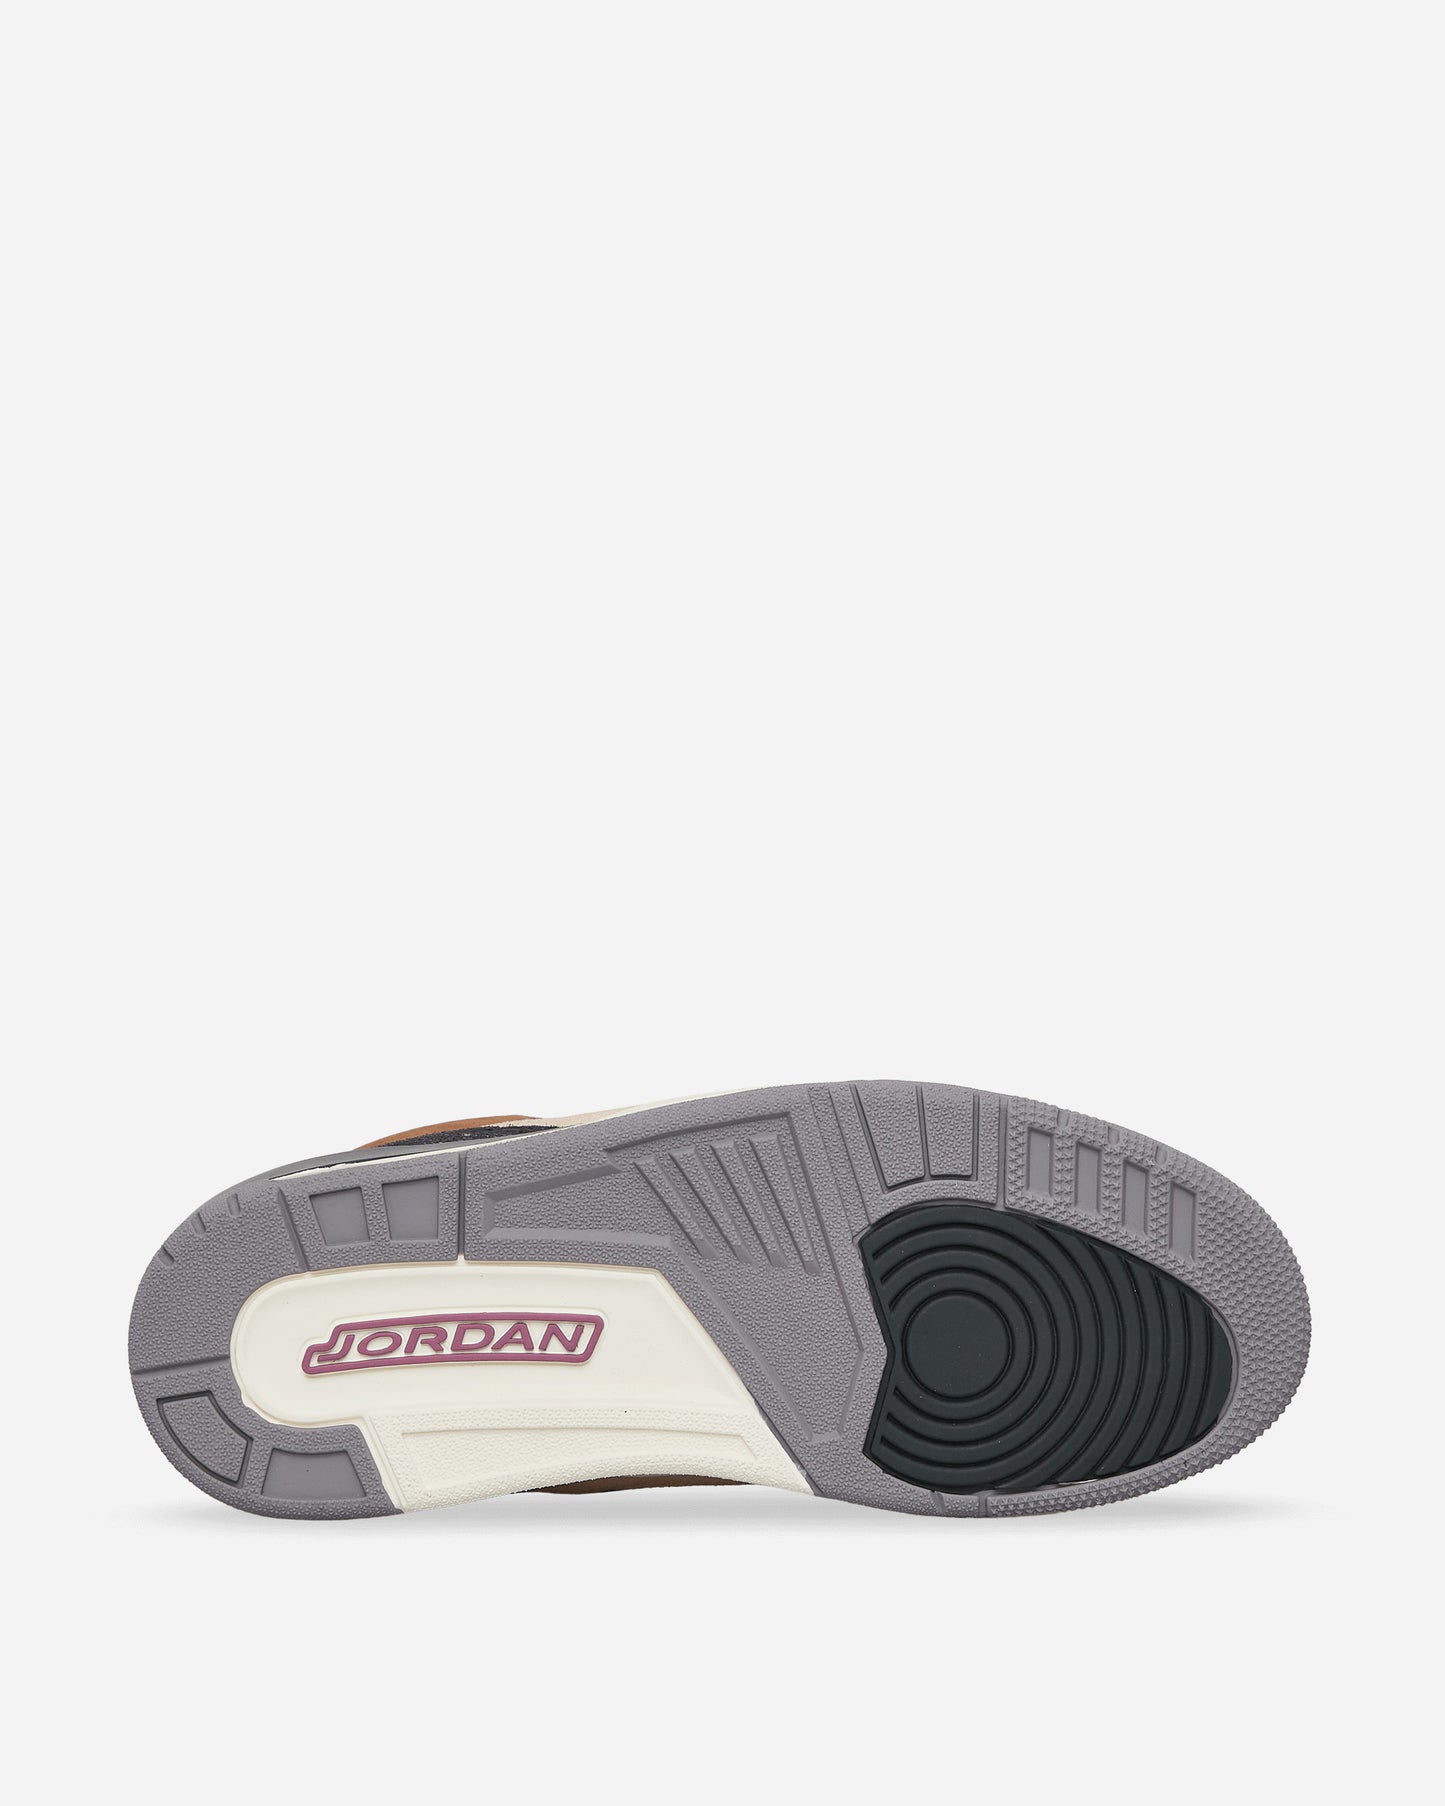 Nike Jordan Air Jordan 3 Retro Se Archaeo Brown/Grey Sneakers Low DR8869-200